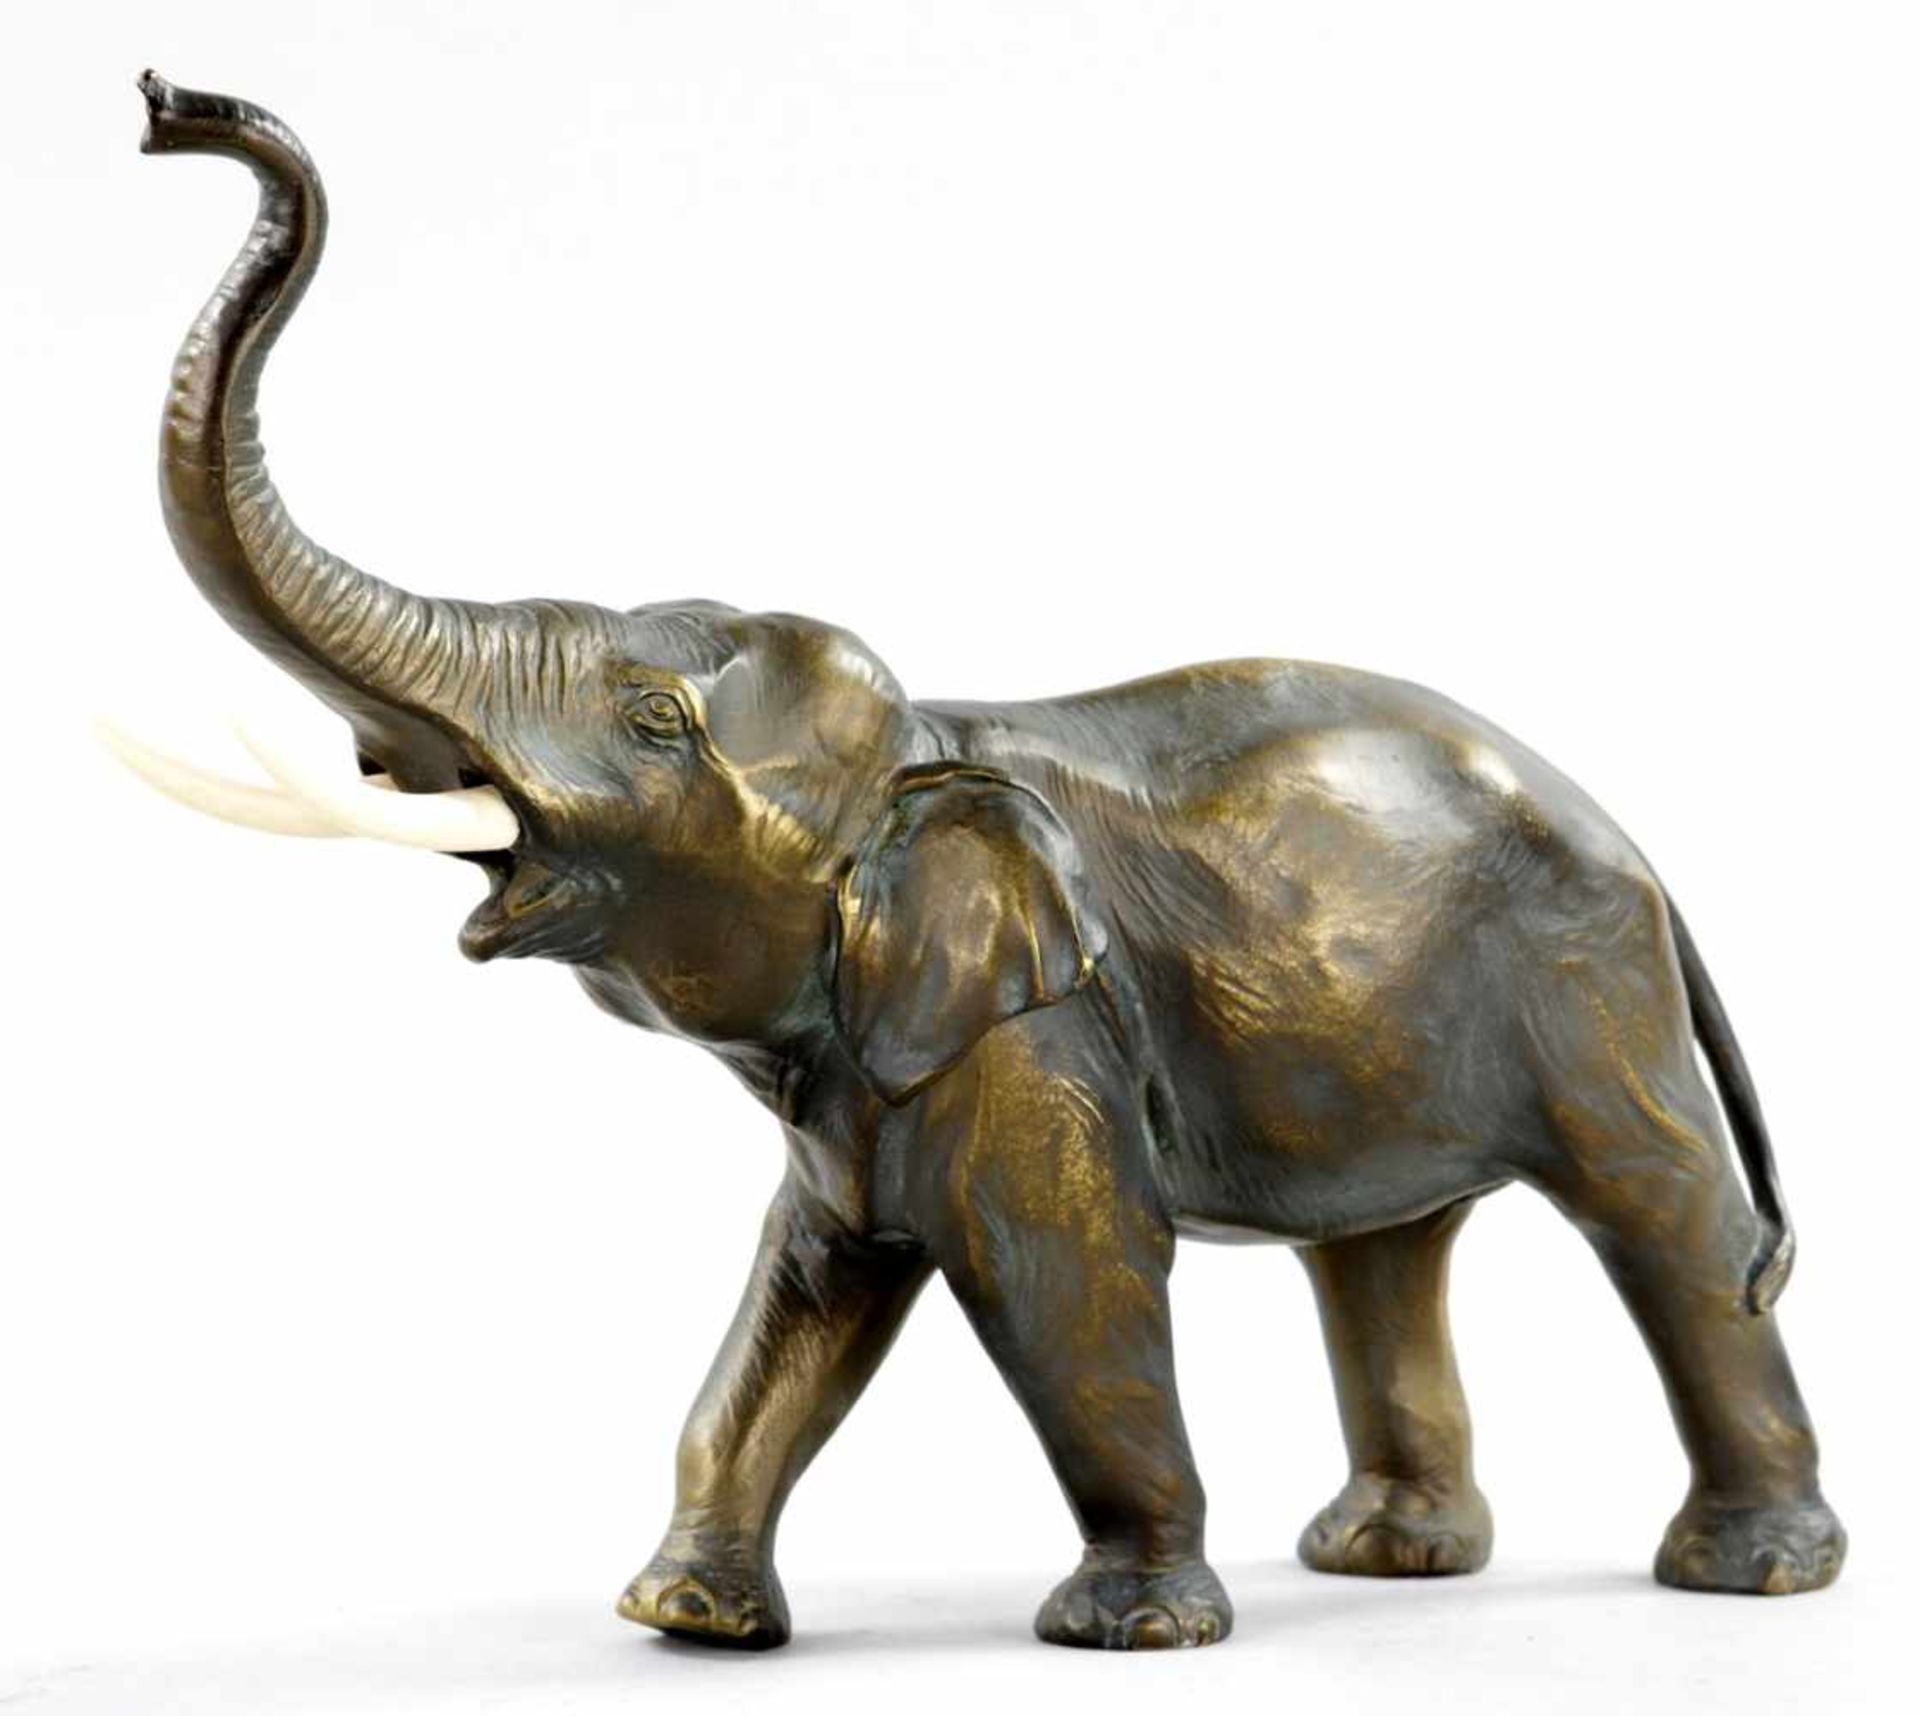 ElefantenfigurMetallguss/Kunststoff, 20.Jh. In naturalistischer Darstellung der stehende